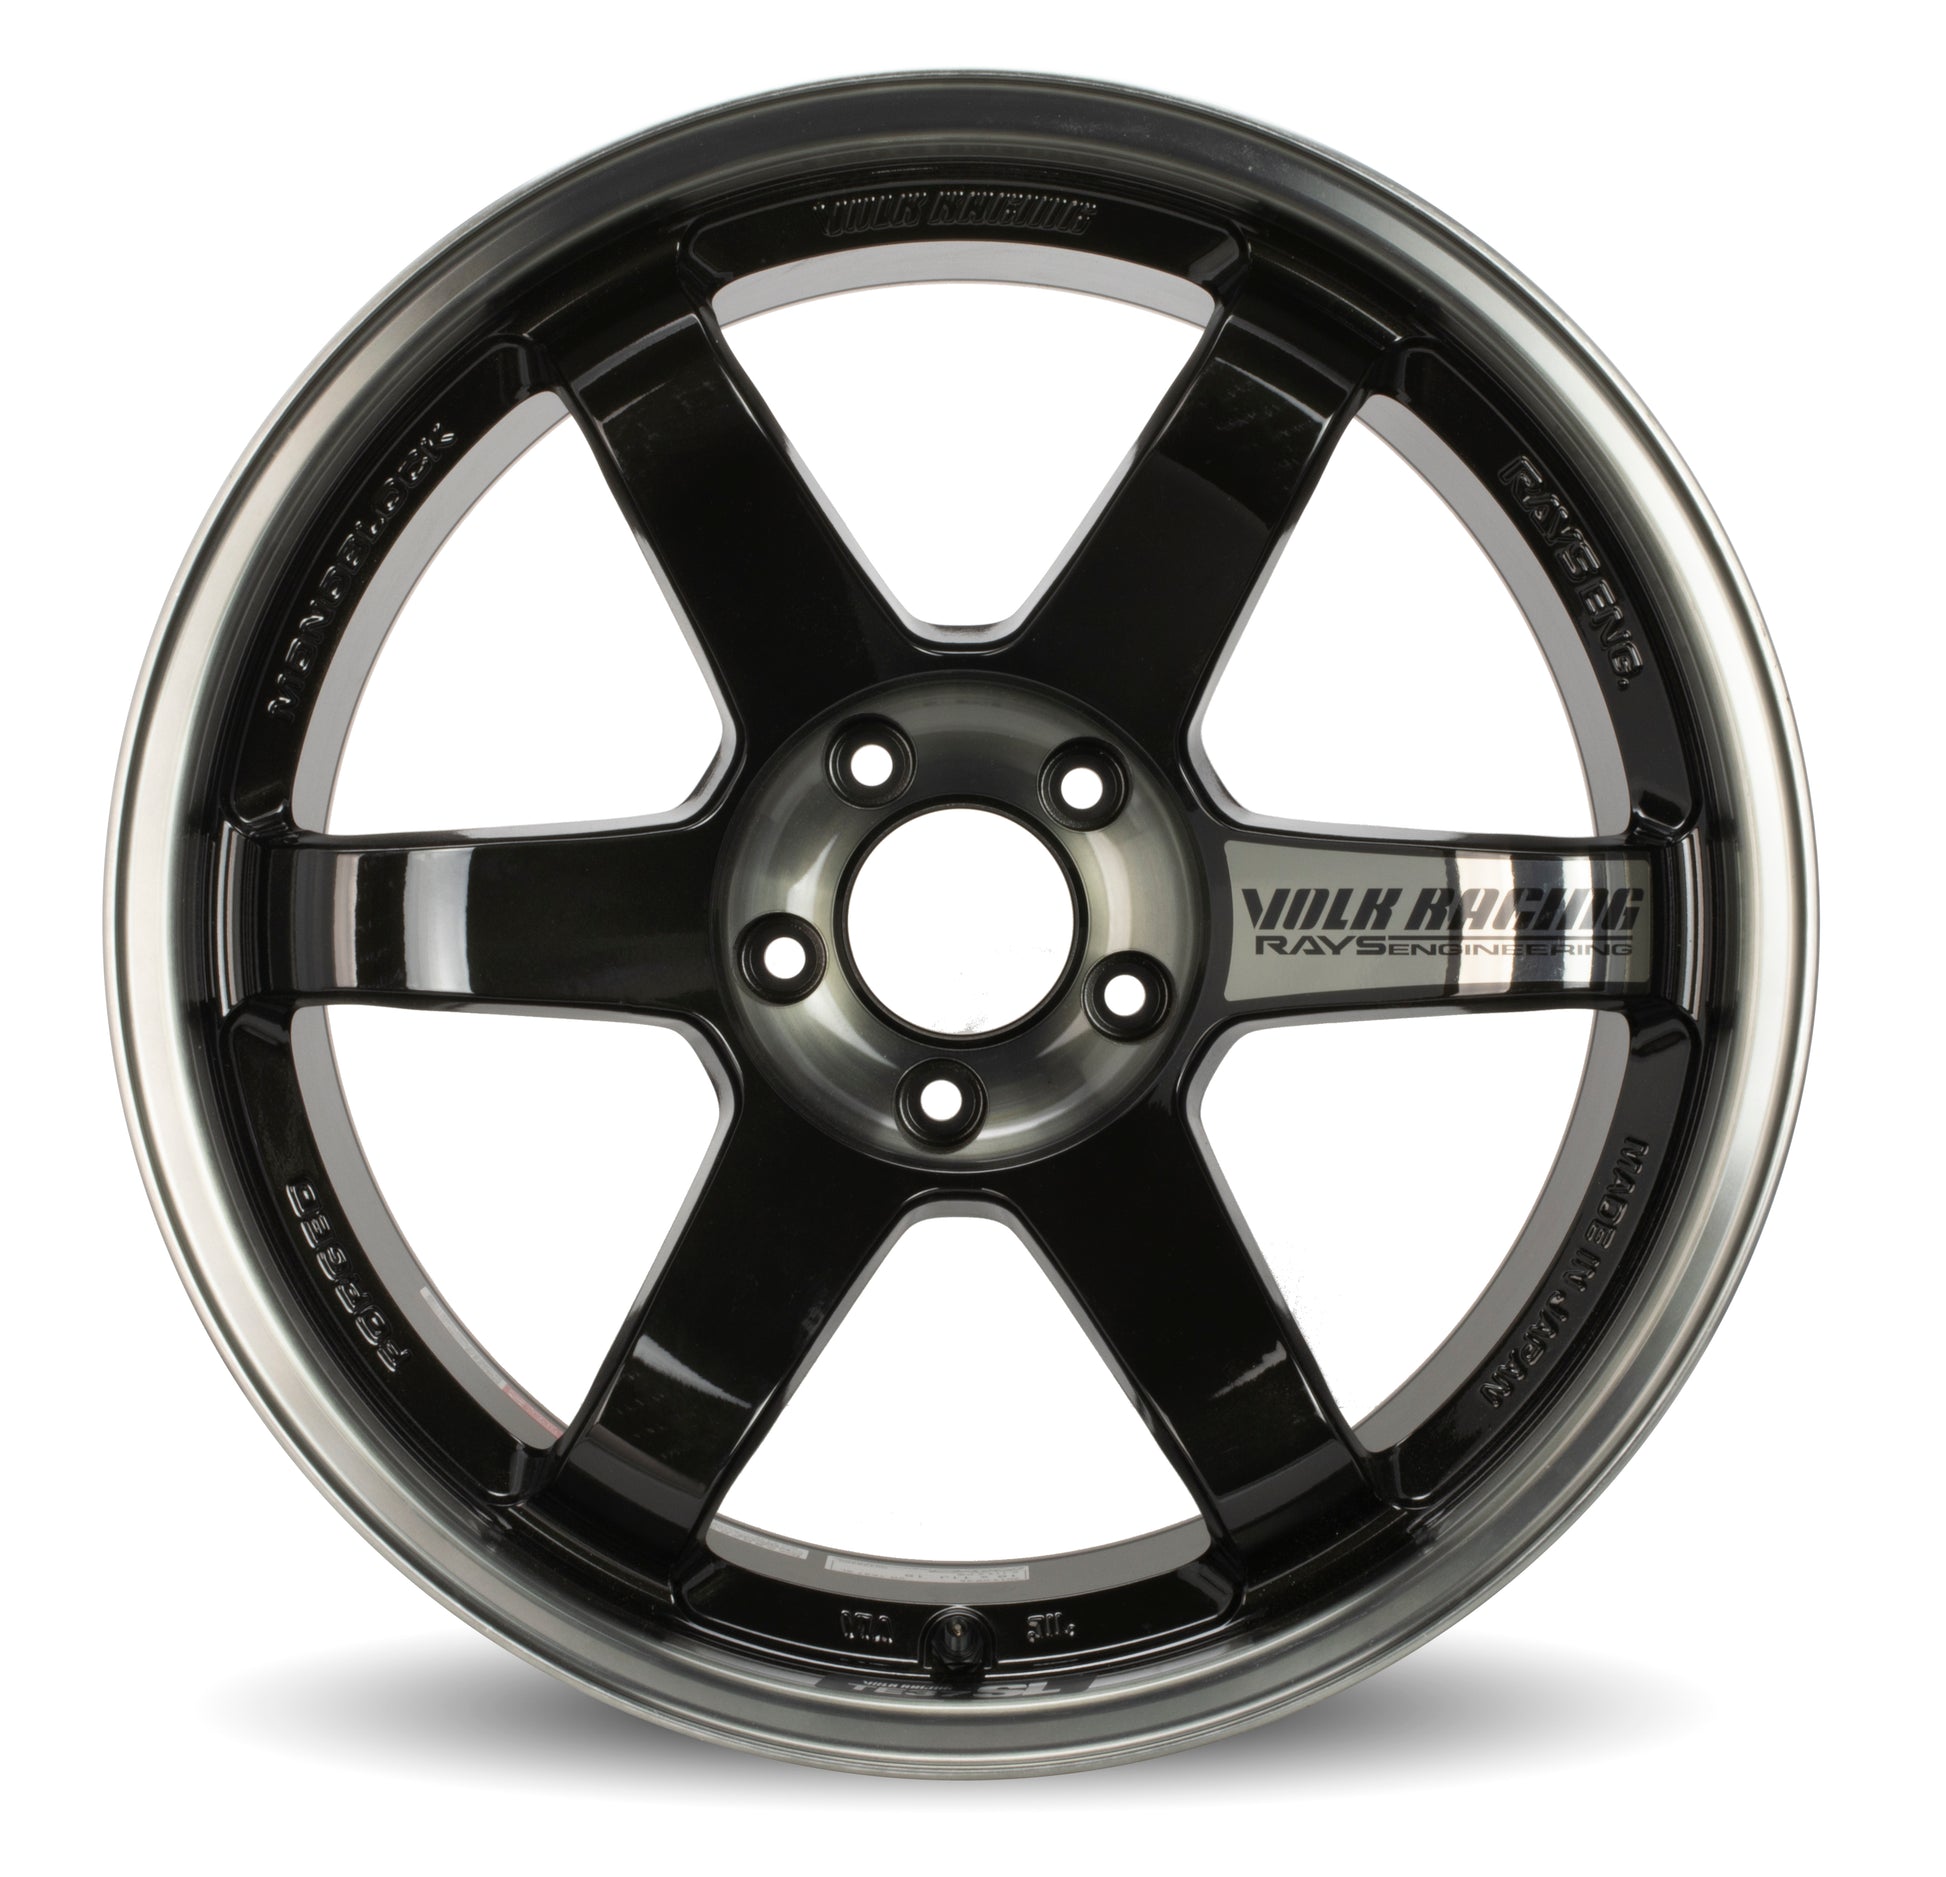 Volk TE37SL 19x9.5 PRESSED DOUBLE BLACK (PW) Wheel